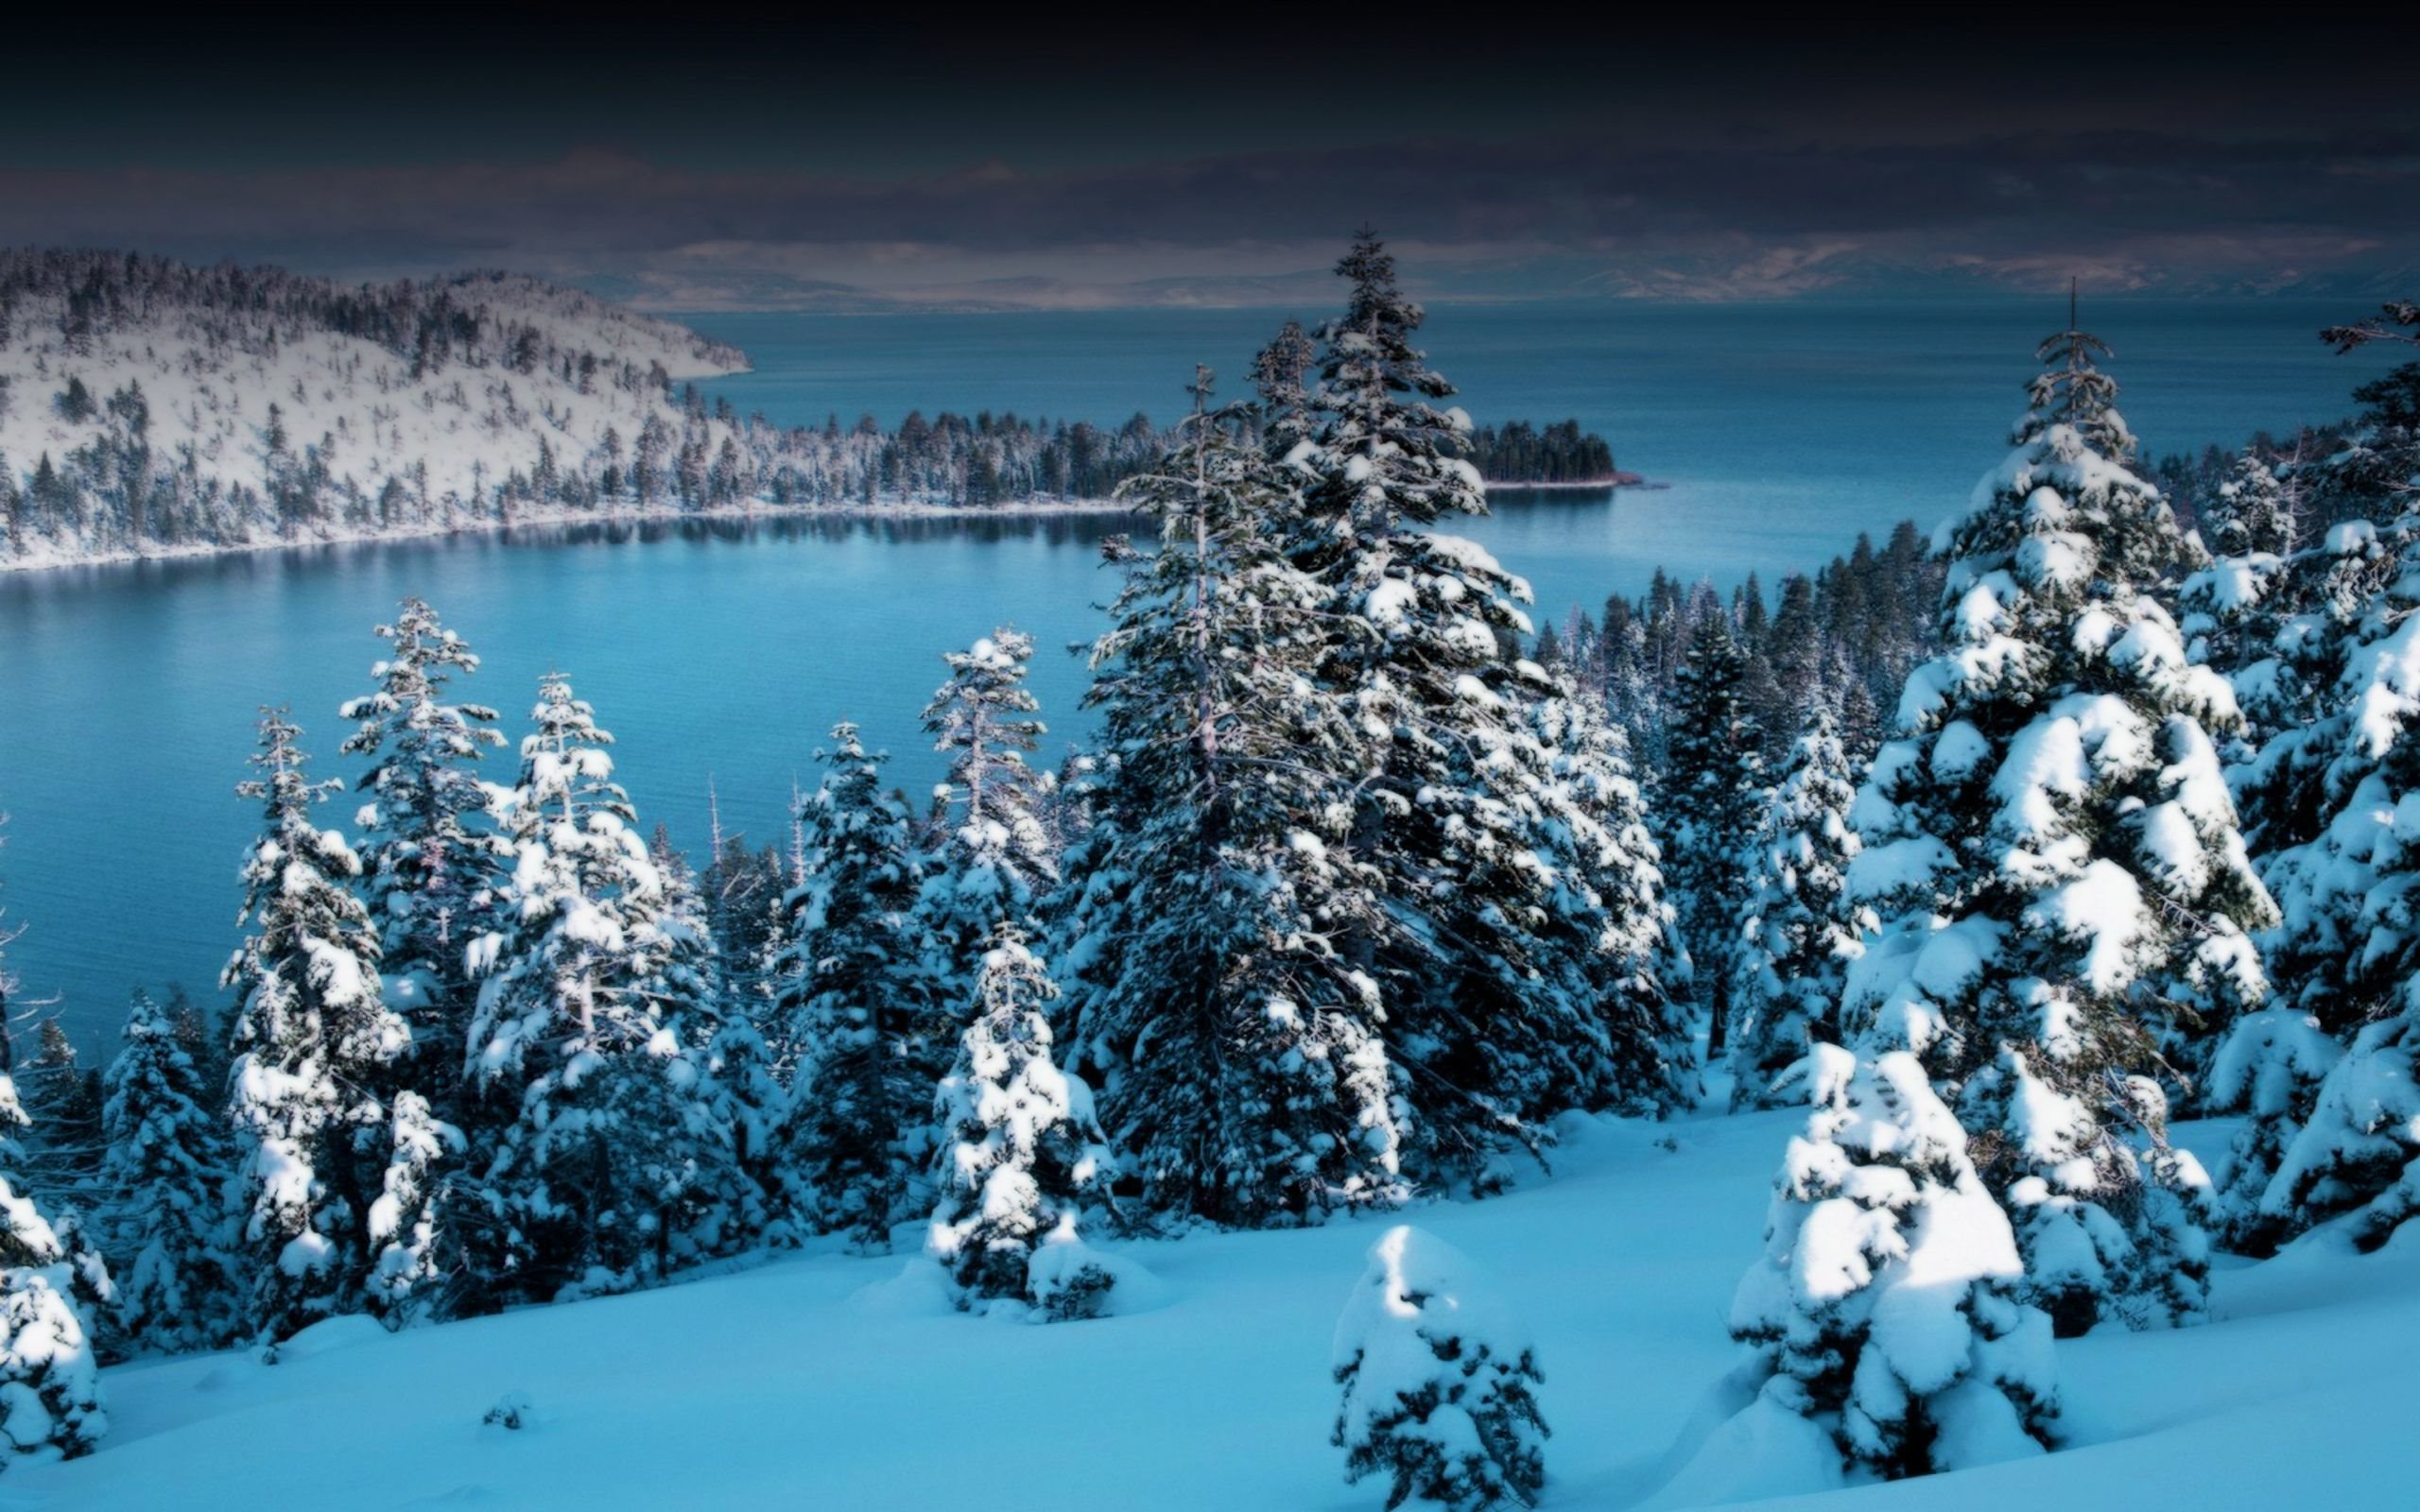 ダウンロード画像 雪 冬 ツリー 湖 画面の解像度 2560x1600 壁紙デスクトップ上